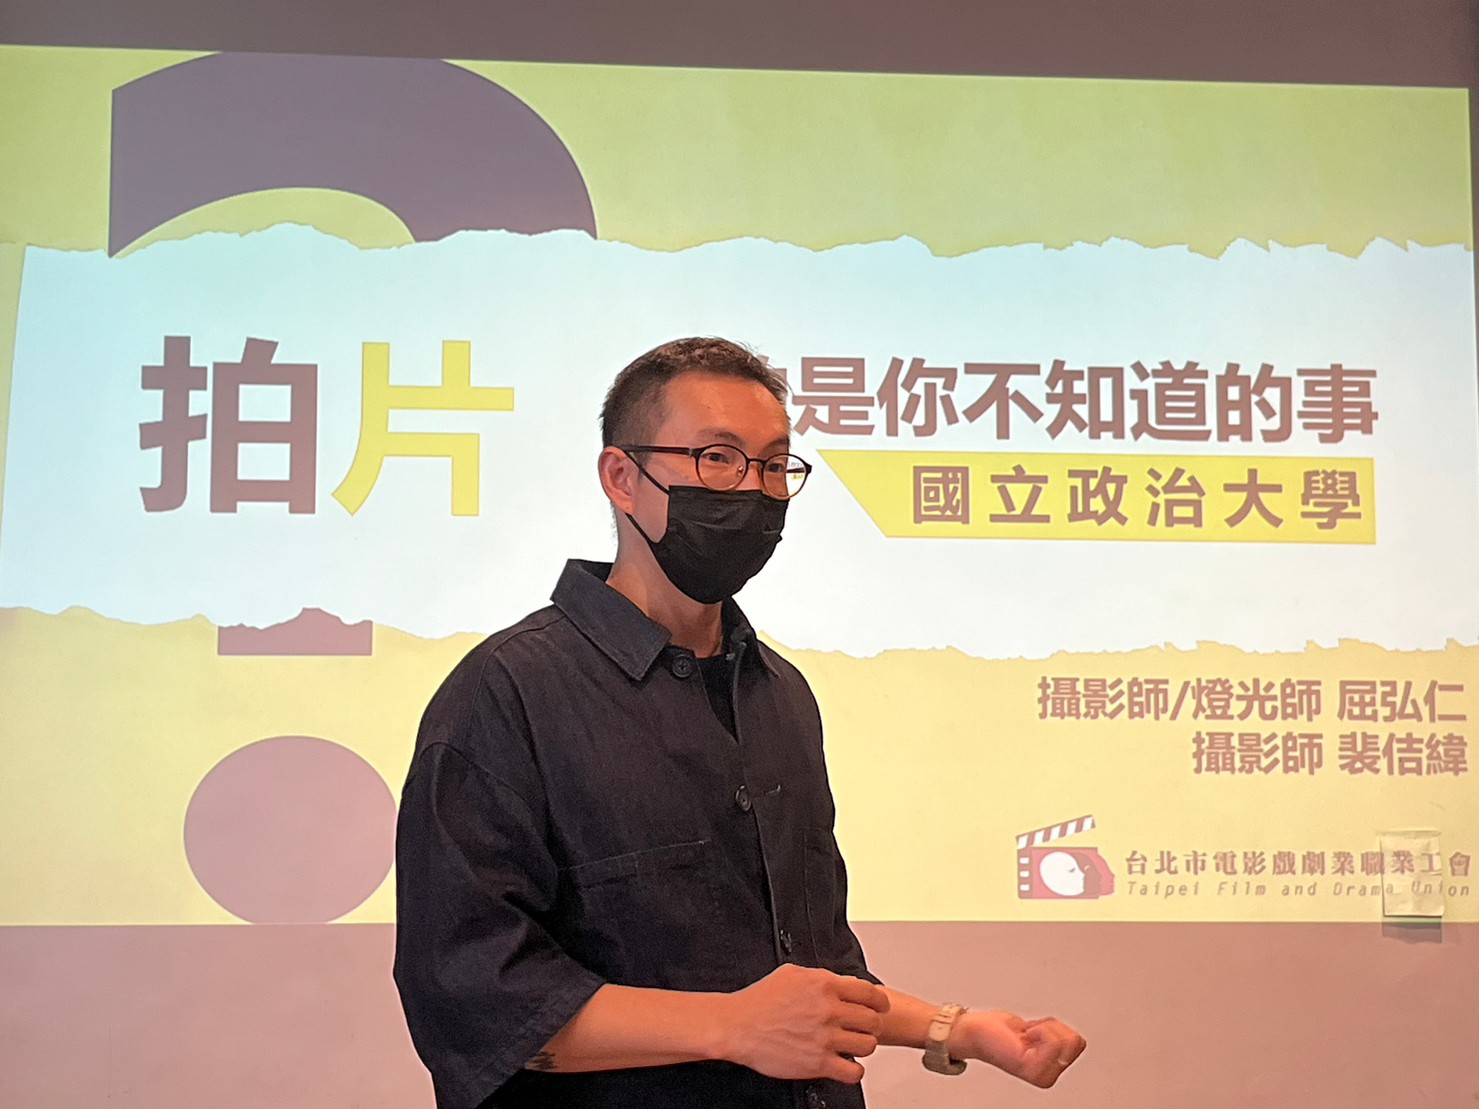 擺脫片場壓榨，伸張自身權利-台灣電影工會到校推廣片場安全